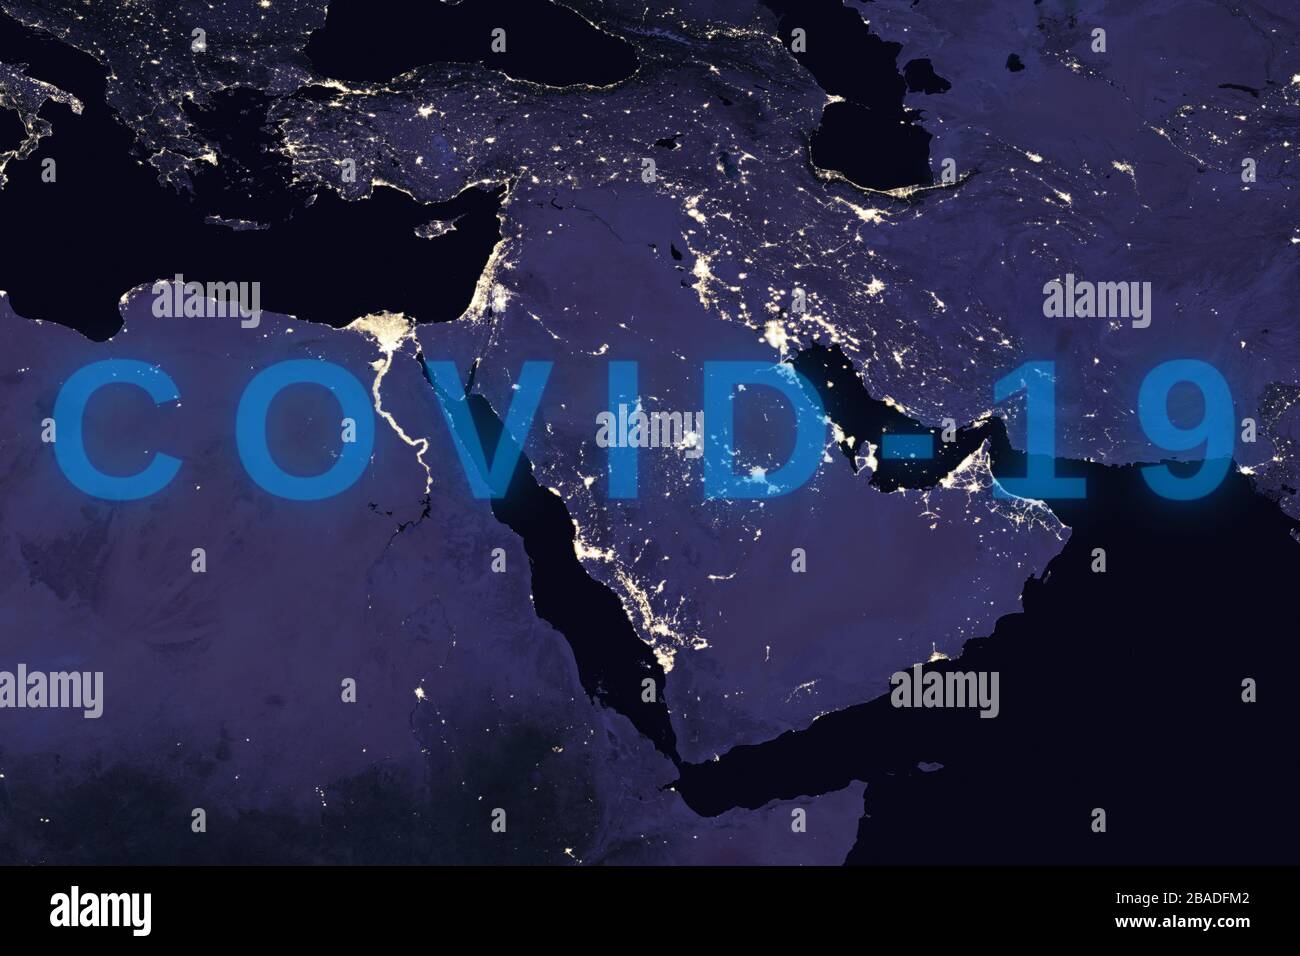 Coronavirus-Krankheit - glühendes COVID-19-Zeichen auf der Karte des Nahen Ostens - Elemente dieses Bildes, das von der NASA eingerichtet wurde Stockfoto